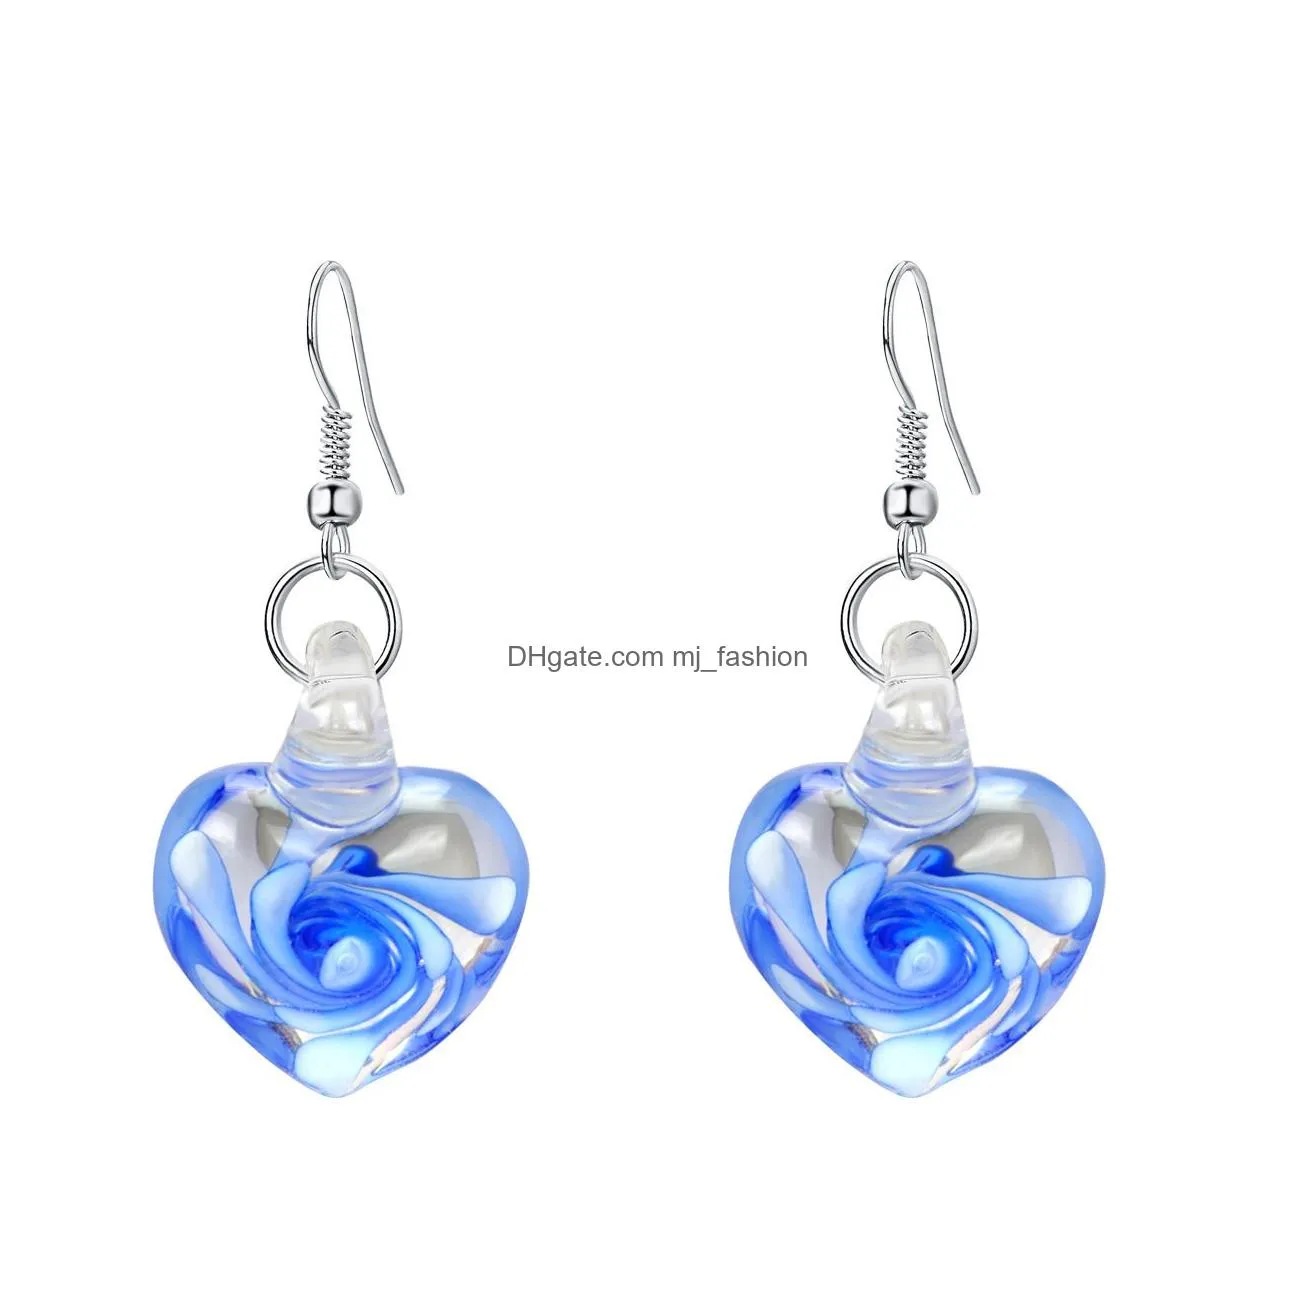 inspired fashion spiral inner flowered glass love dangle earrings coloured glaze pendant earring for girl lady